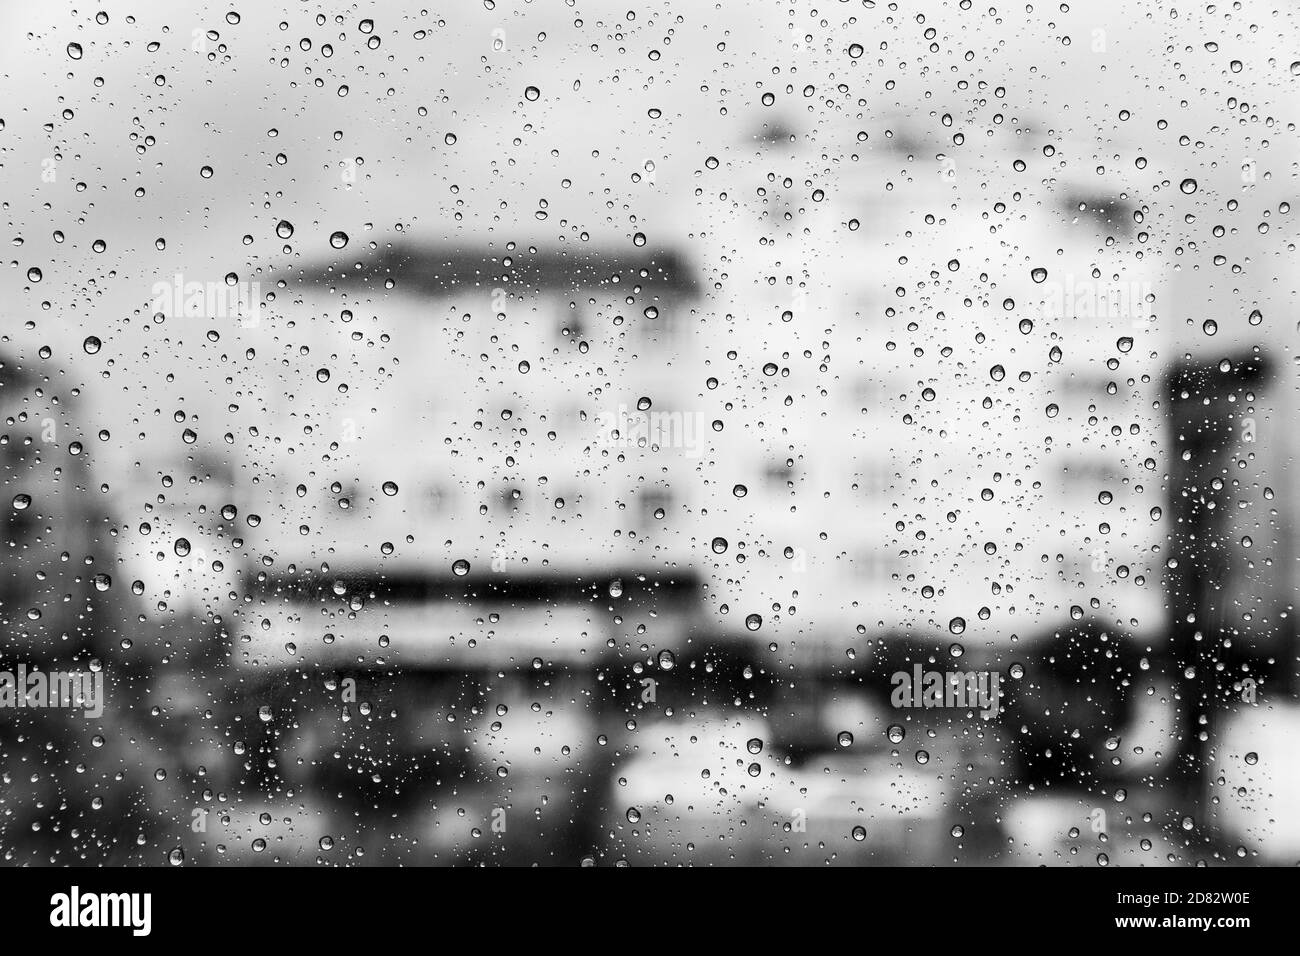 Foto astratta di gocce d'acqua sulla finestra Foto Stock